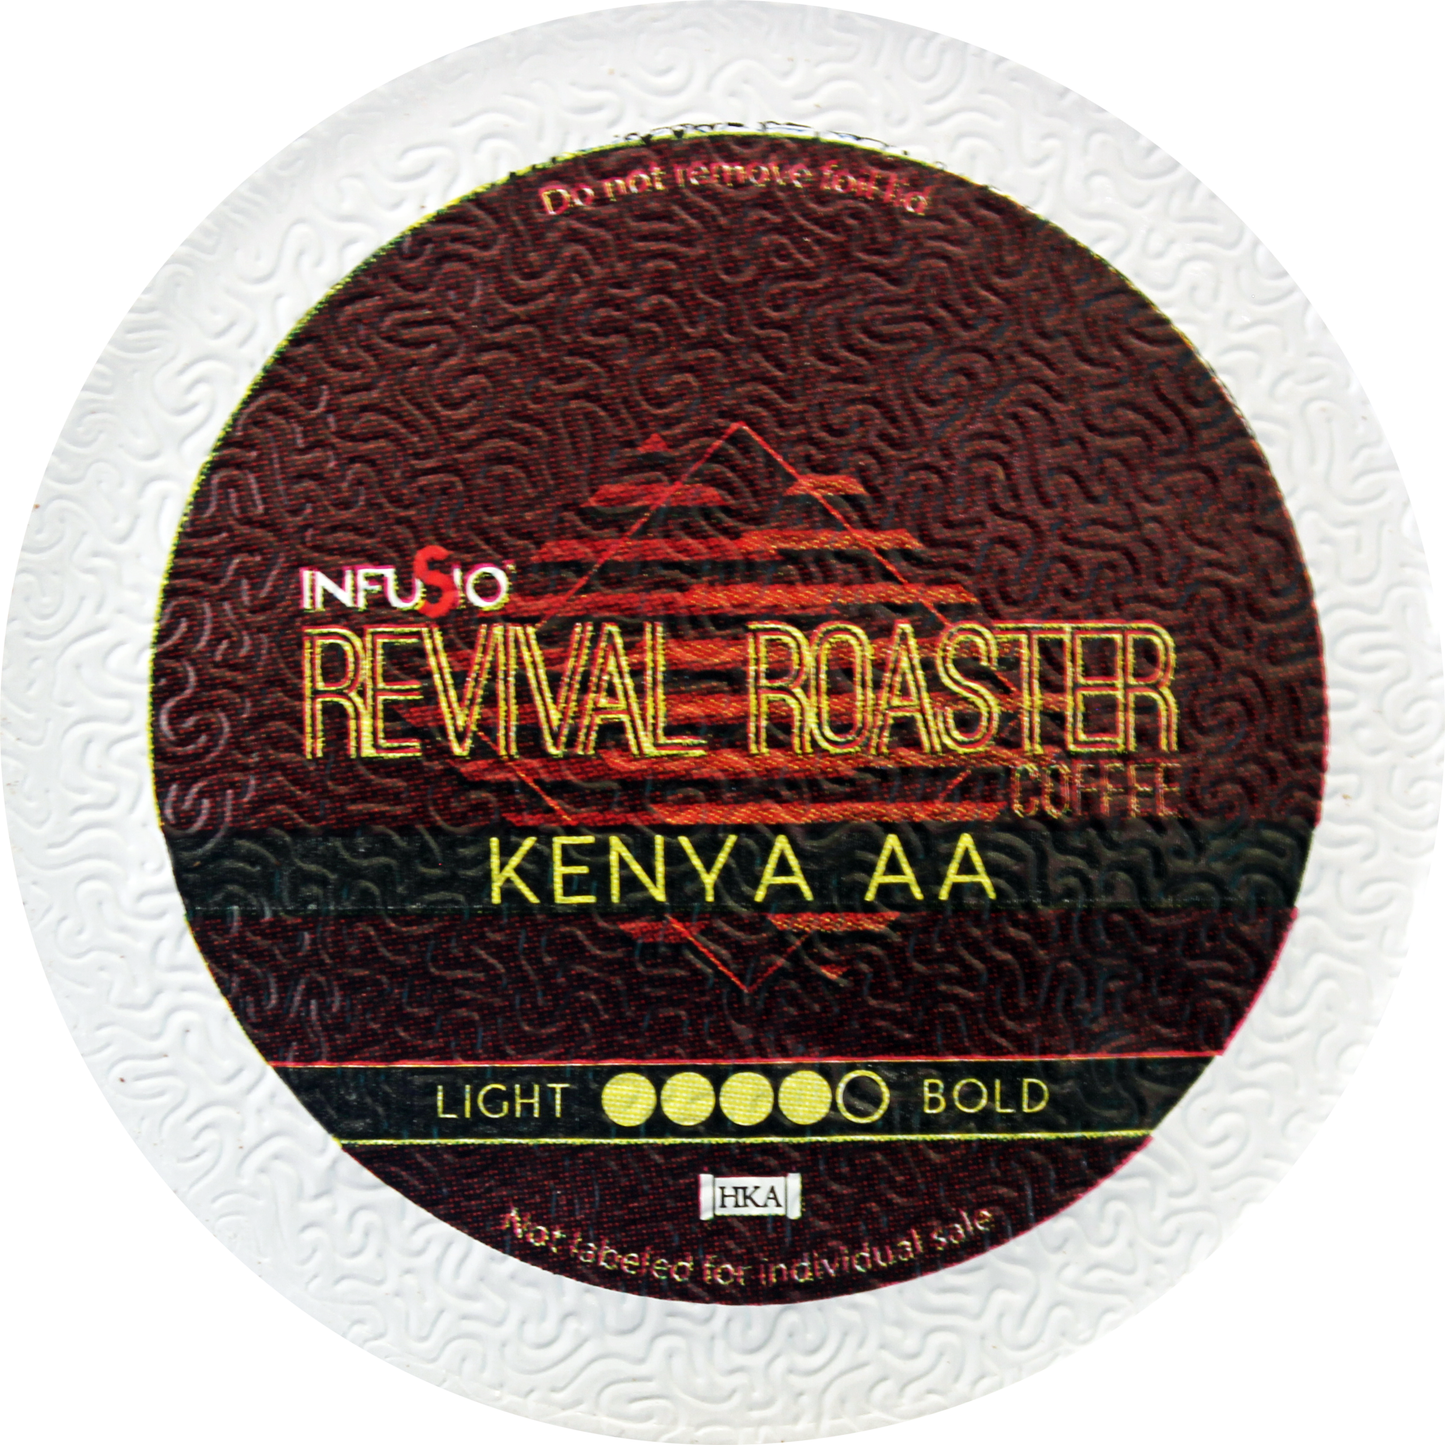 Revival Roaster Kenya AA K Cups 96 Count